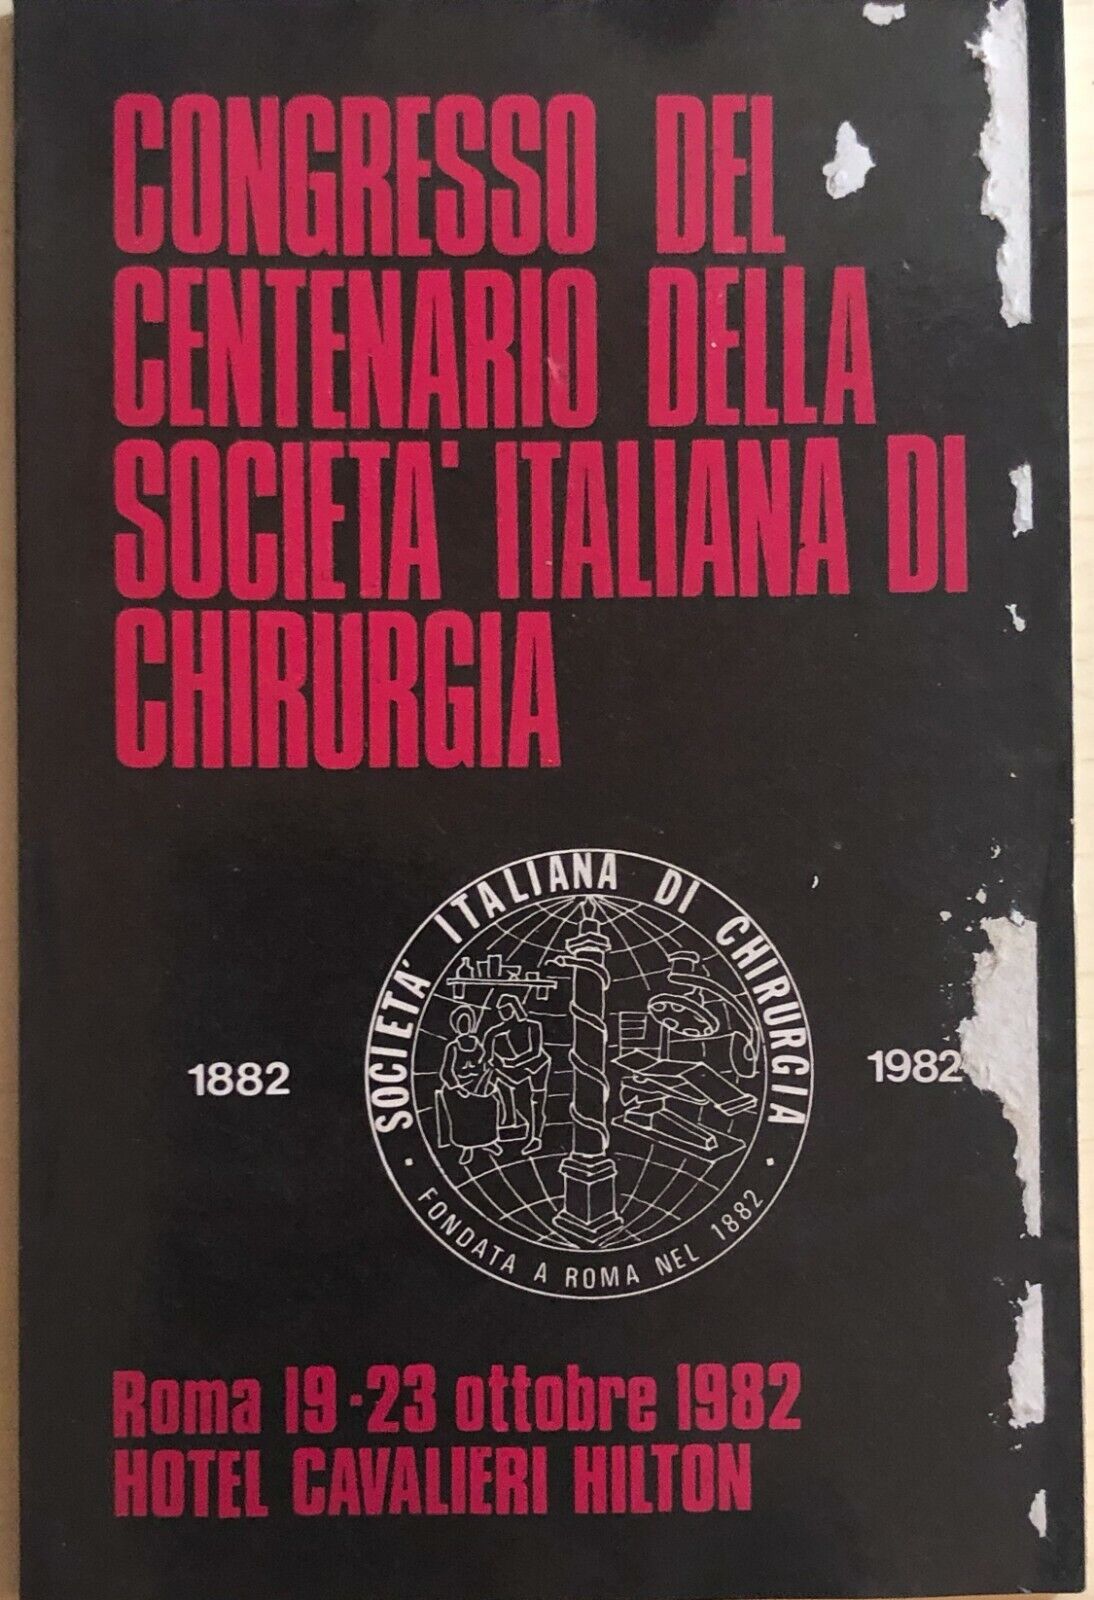 Congresso del centenario della societ? italiana di chirurgia di Aa.vv., 1982, Az